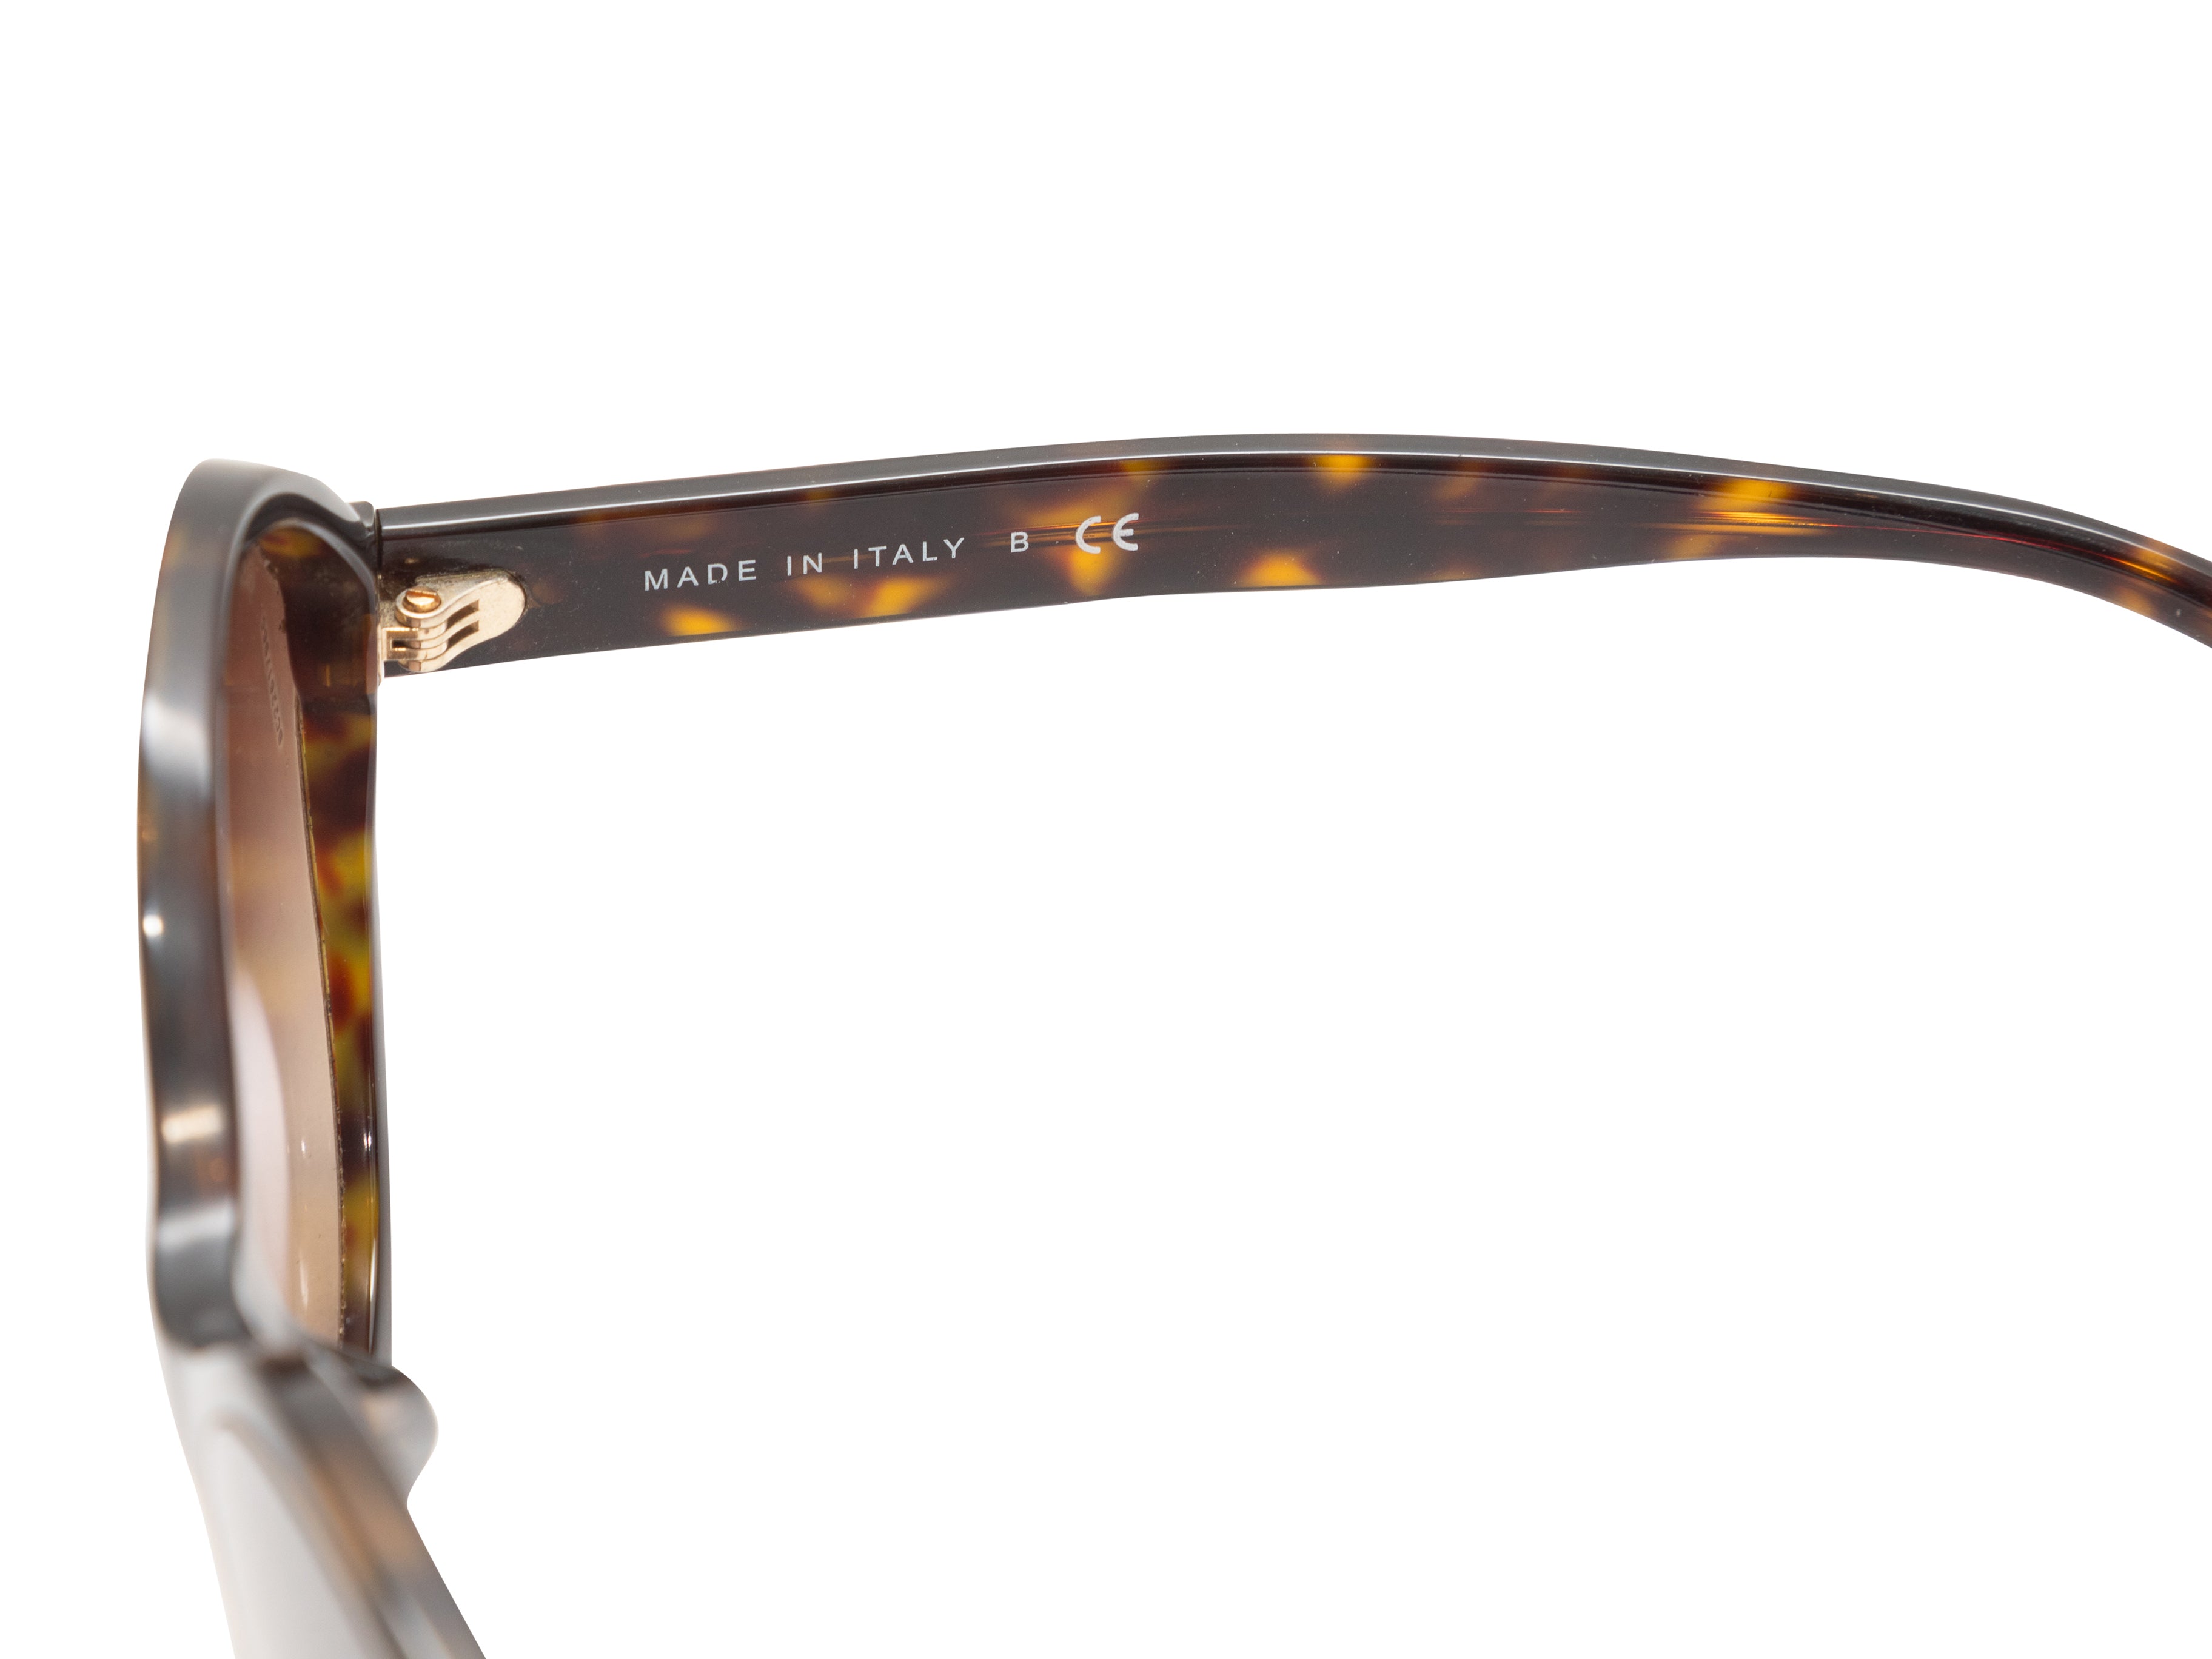 Tortoiseshell Chanel Oversized Sunglasses – Designer Revival